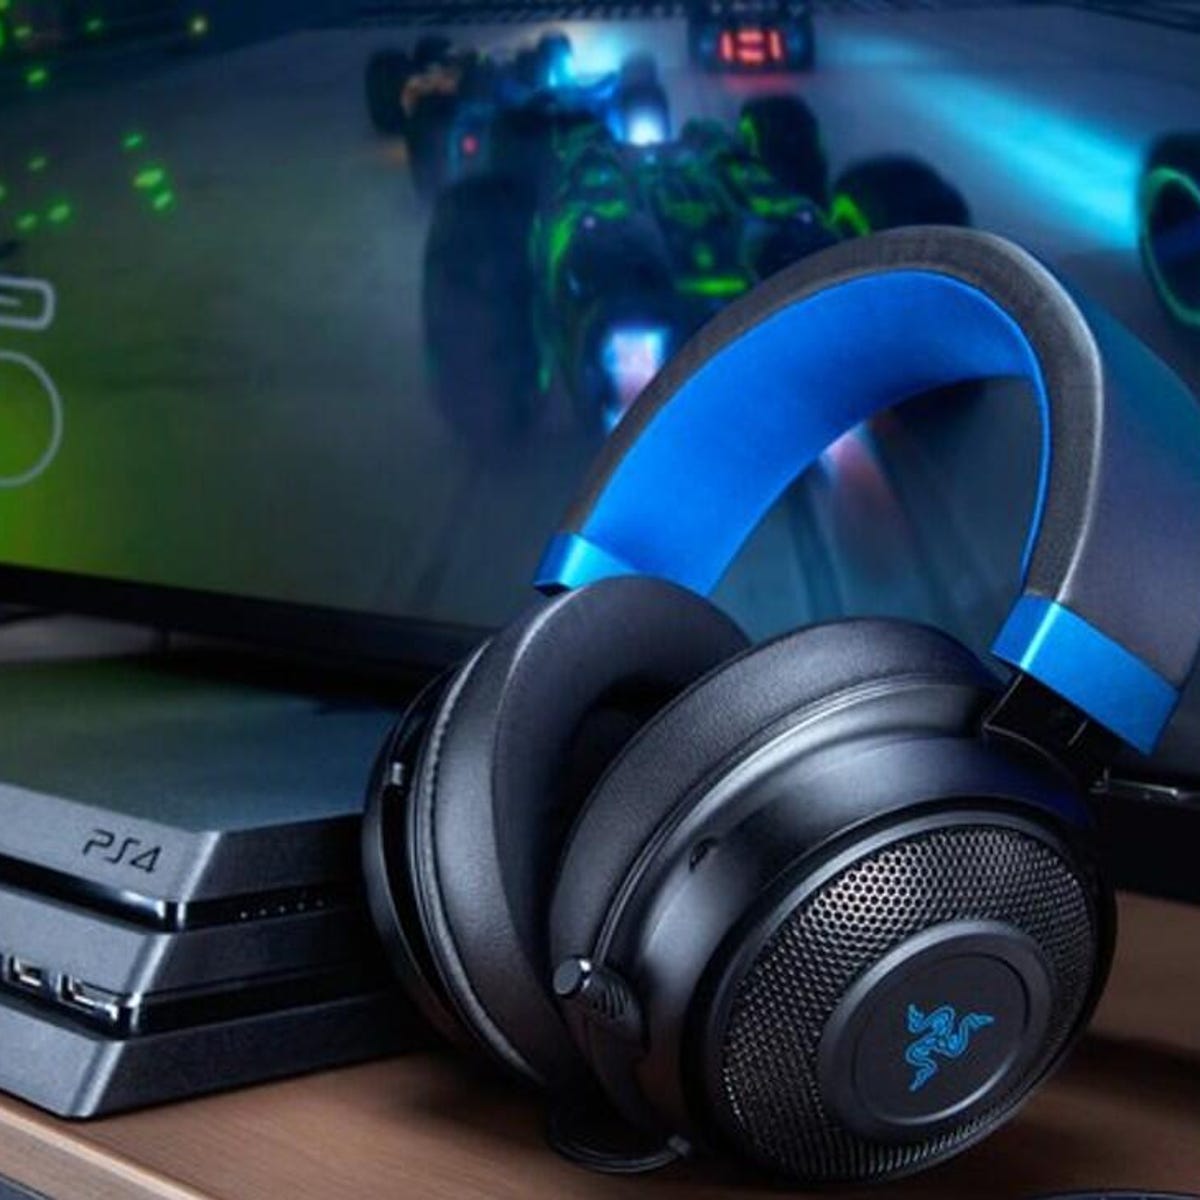 Rouwen wees gegroet Vervallen The best PC gaming headsets of 2023 | ZDNET